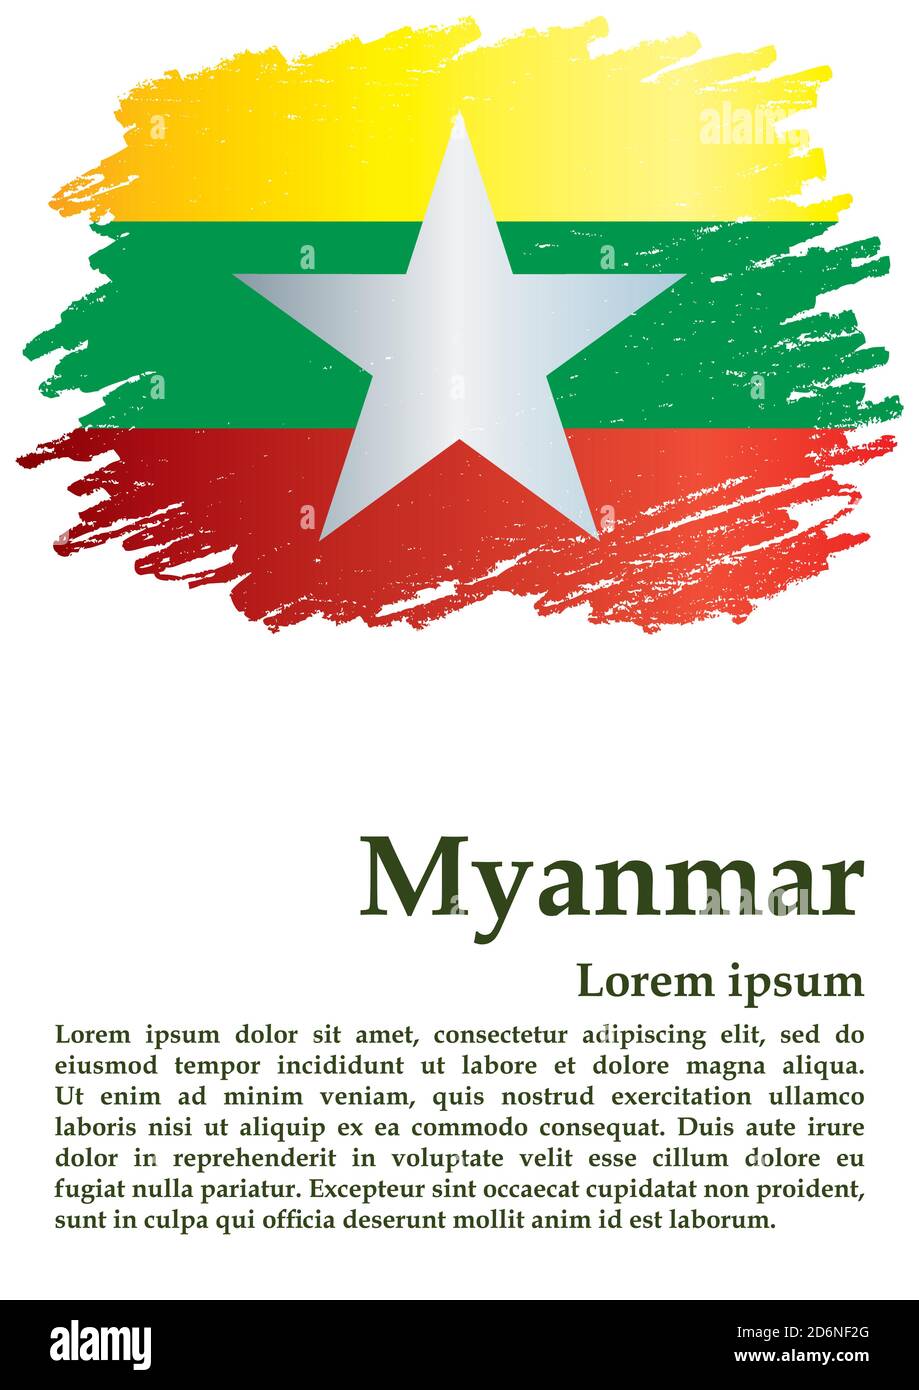 Drapeau du Myanmar, République de l'Union du Myanmar. Modèle de conception de la bourse, document officiel avec le drapeau du Myanmar. Vecteur i lumineux et coloré Illustration de Vecteur